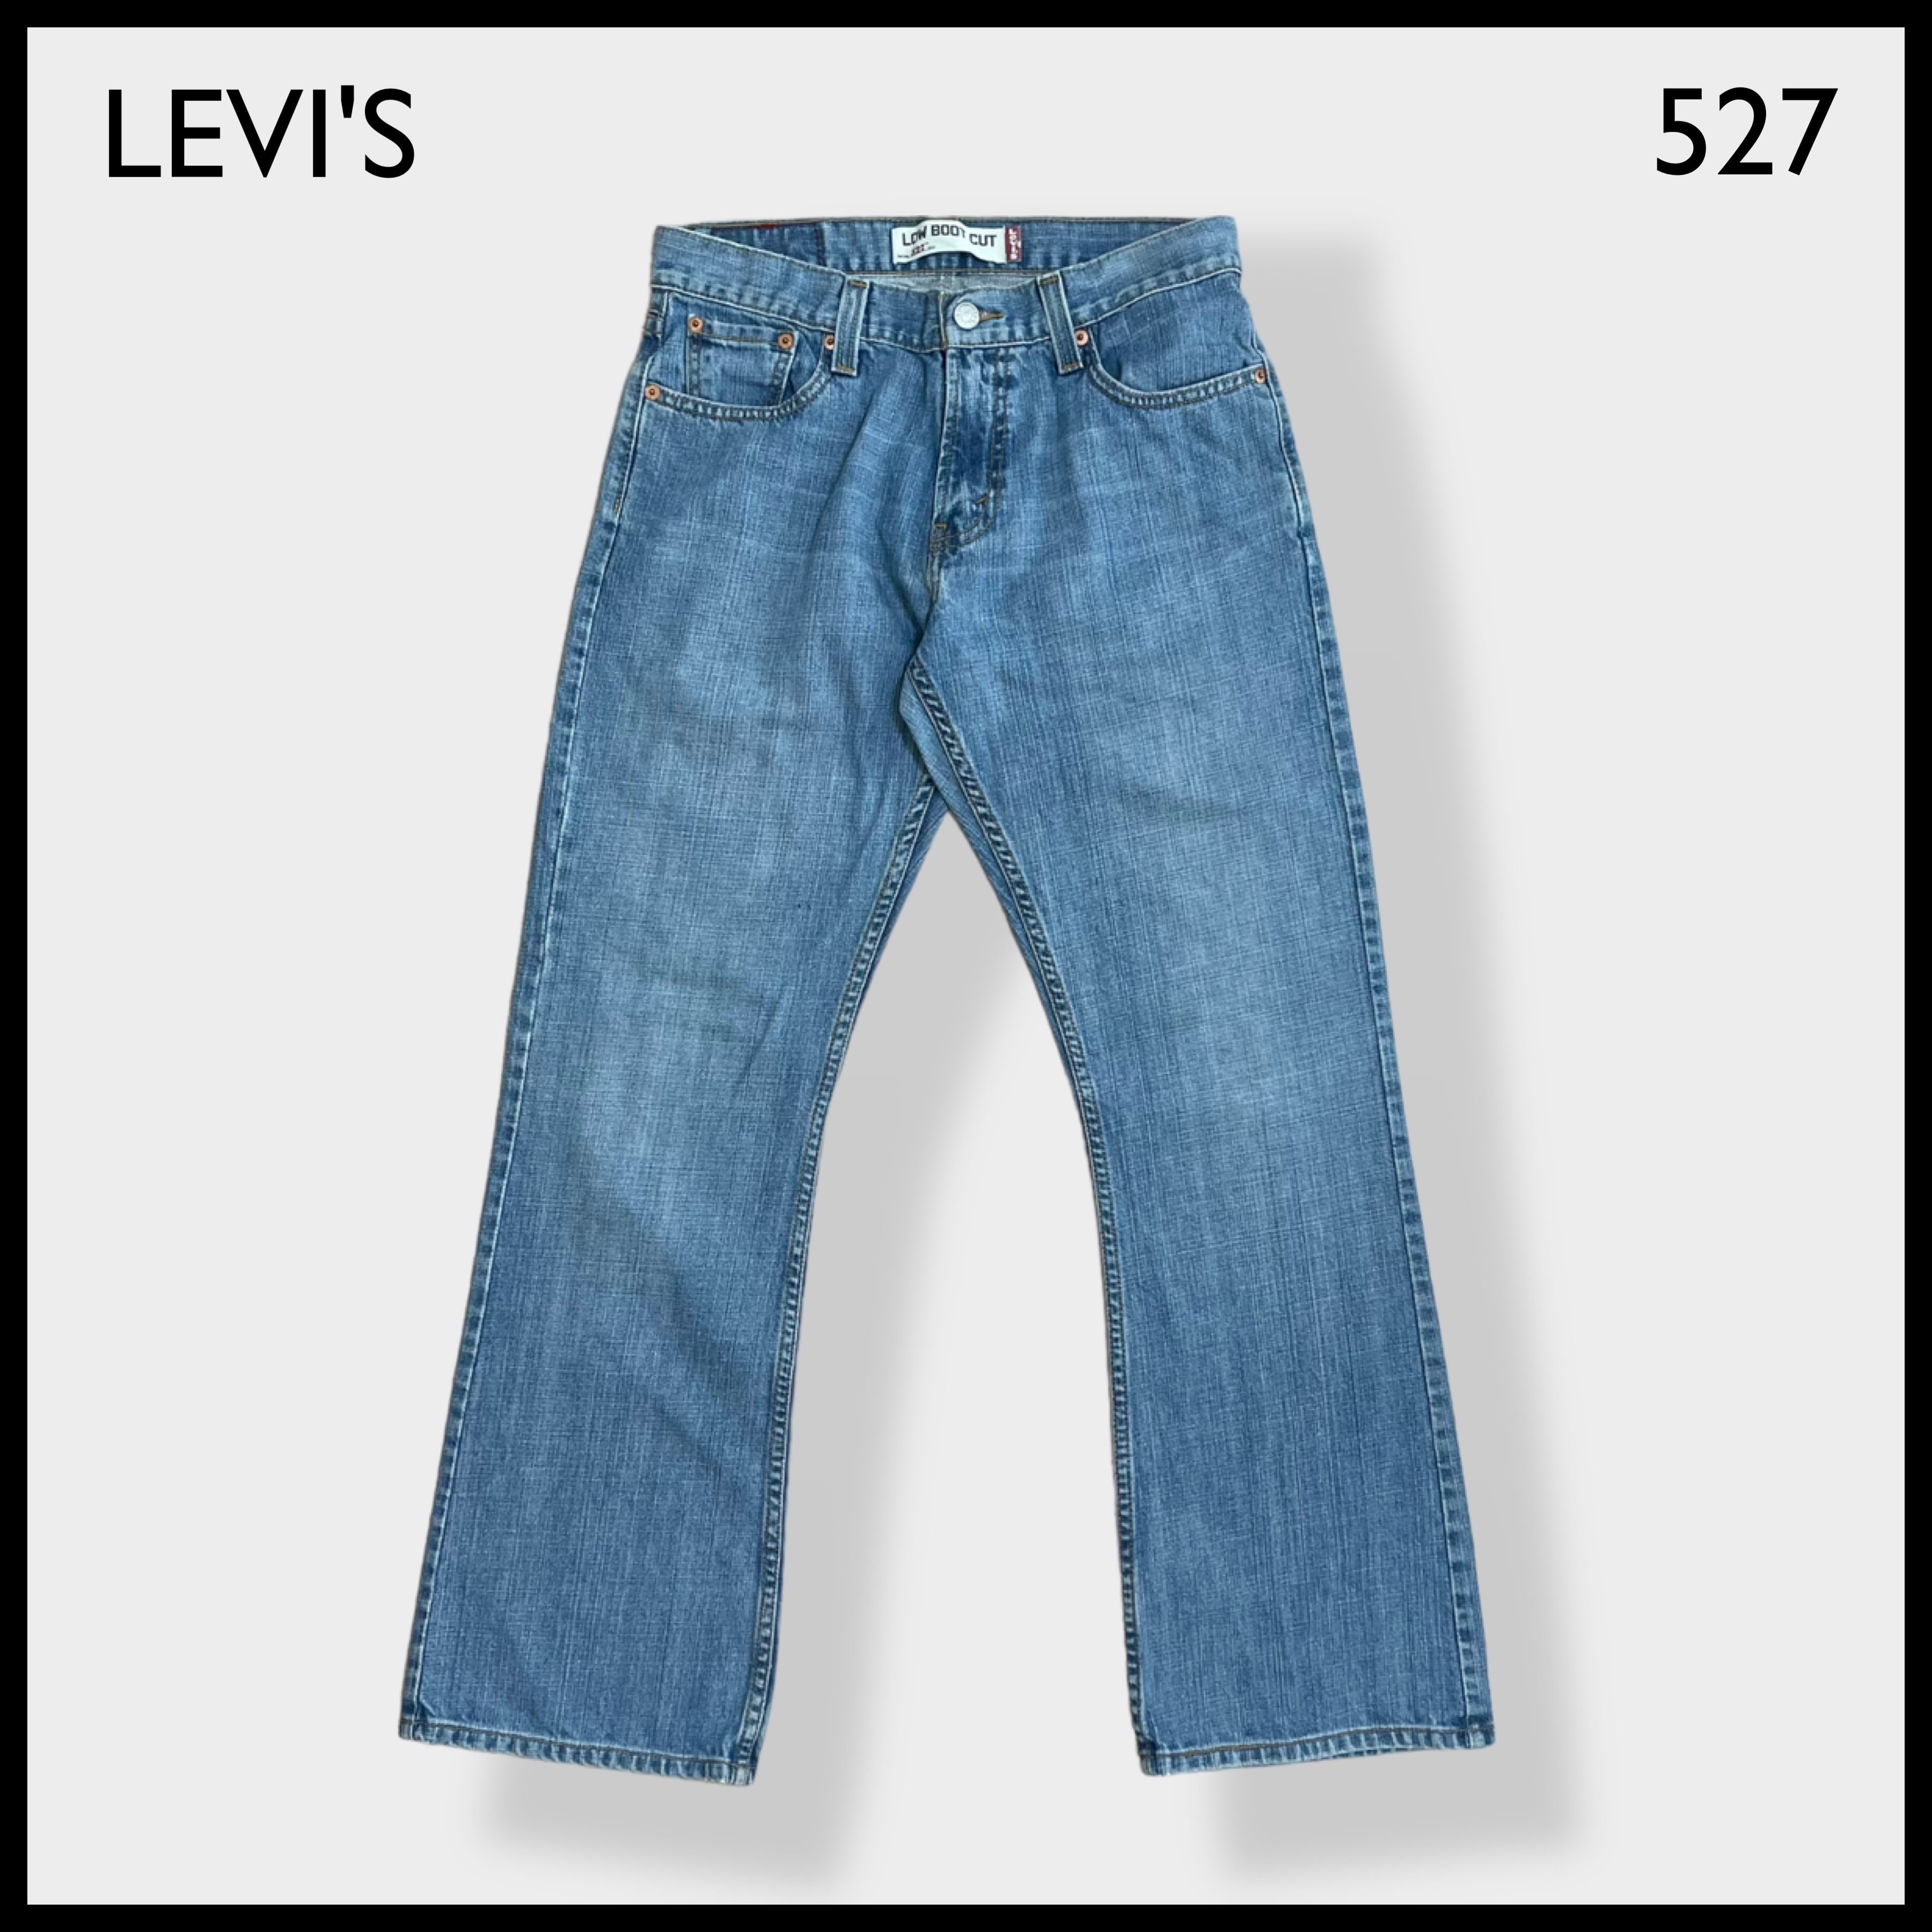 LEVI'S】527 デニム ジーパン ジーンズ ブーツカット フレア ...